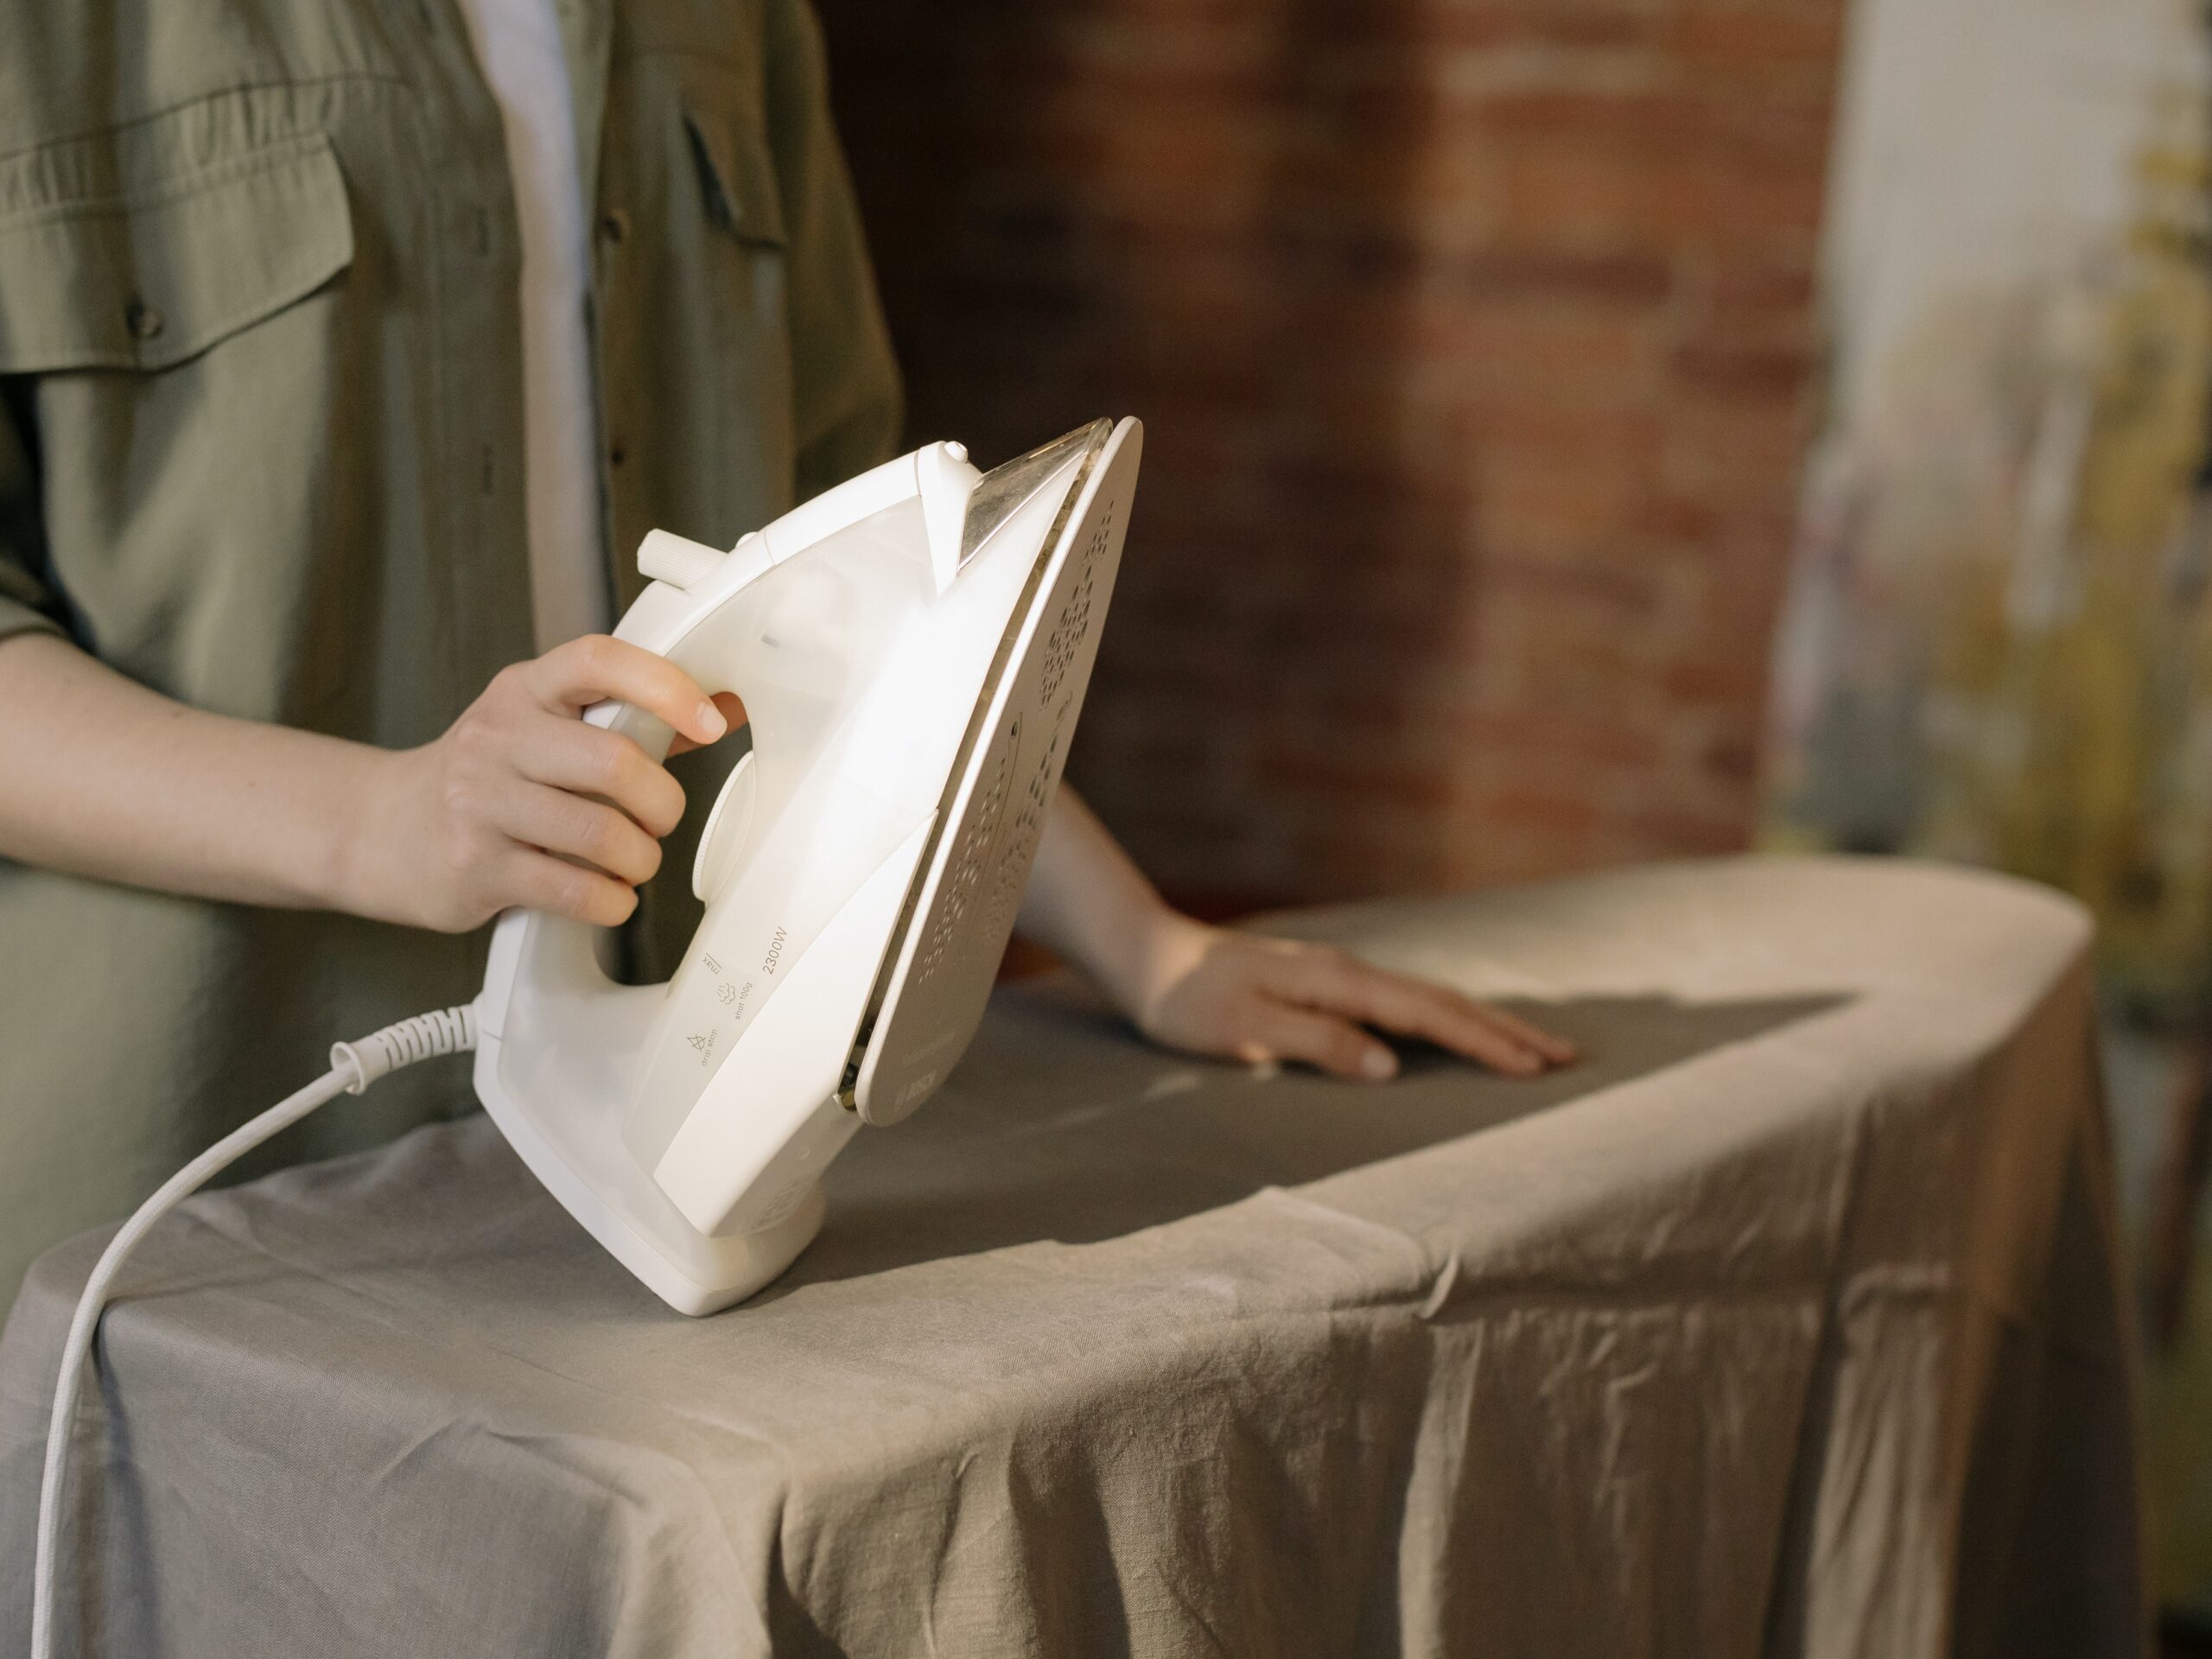 A woman ironing image